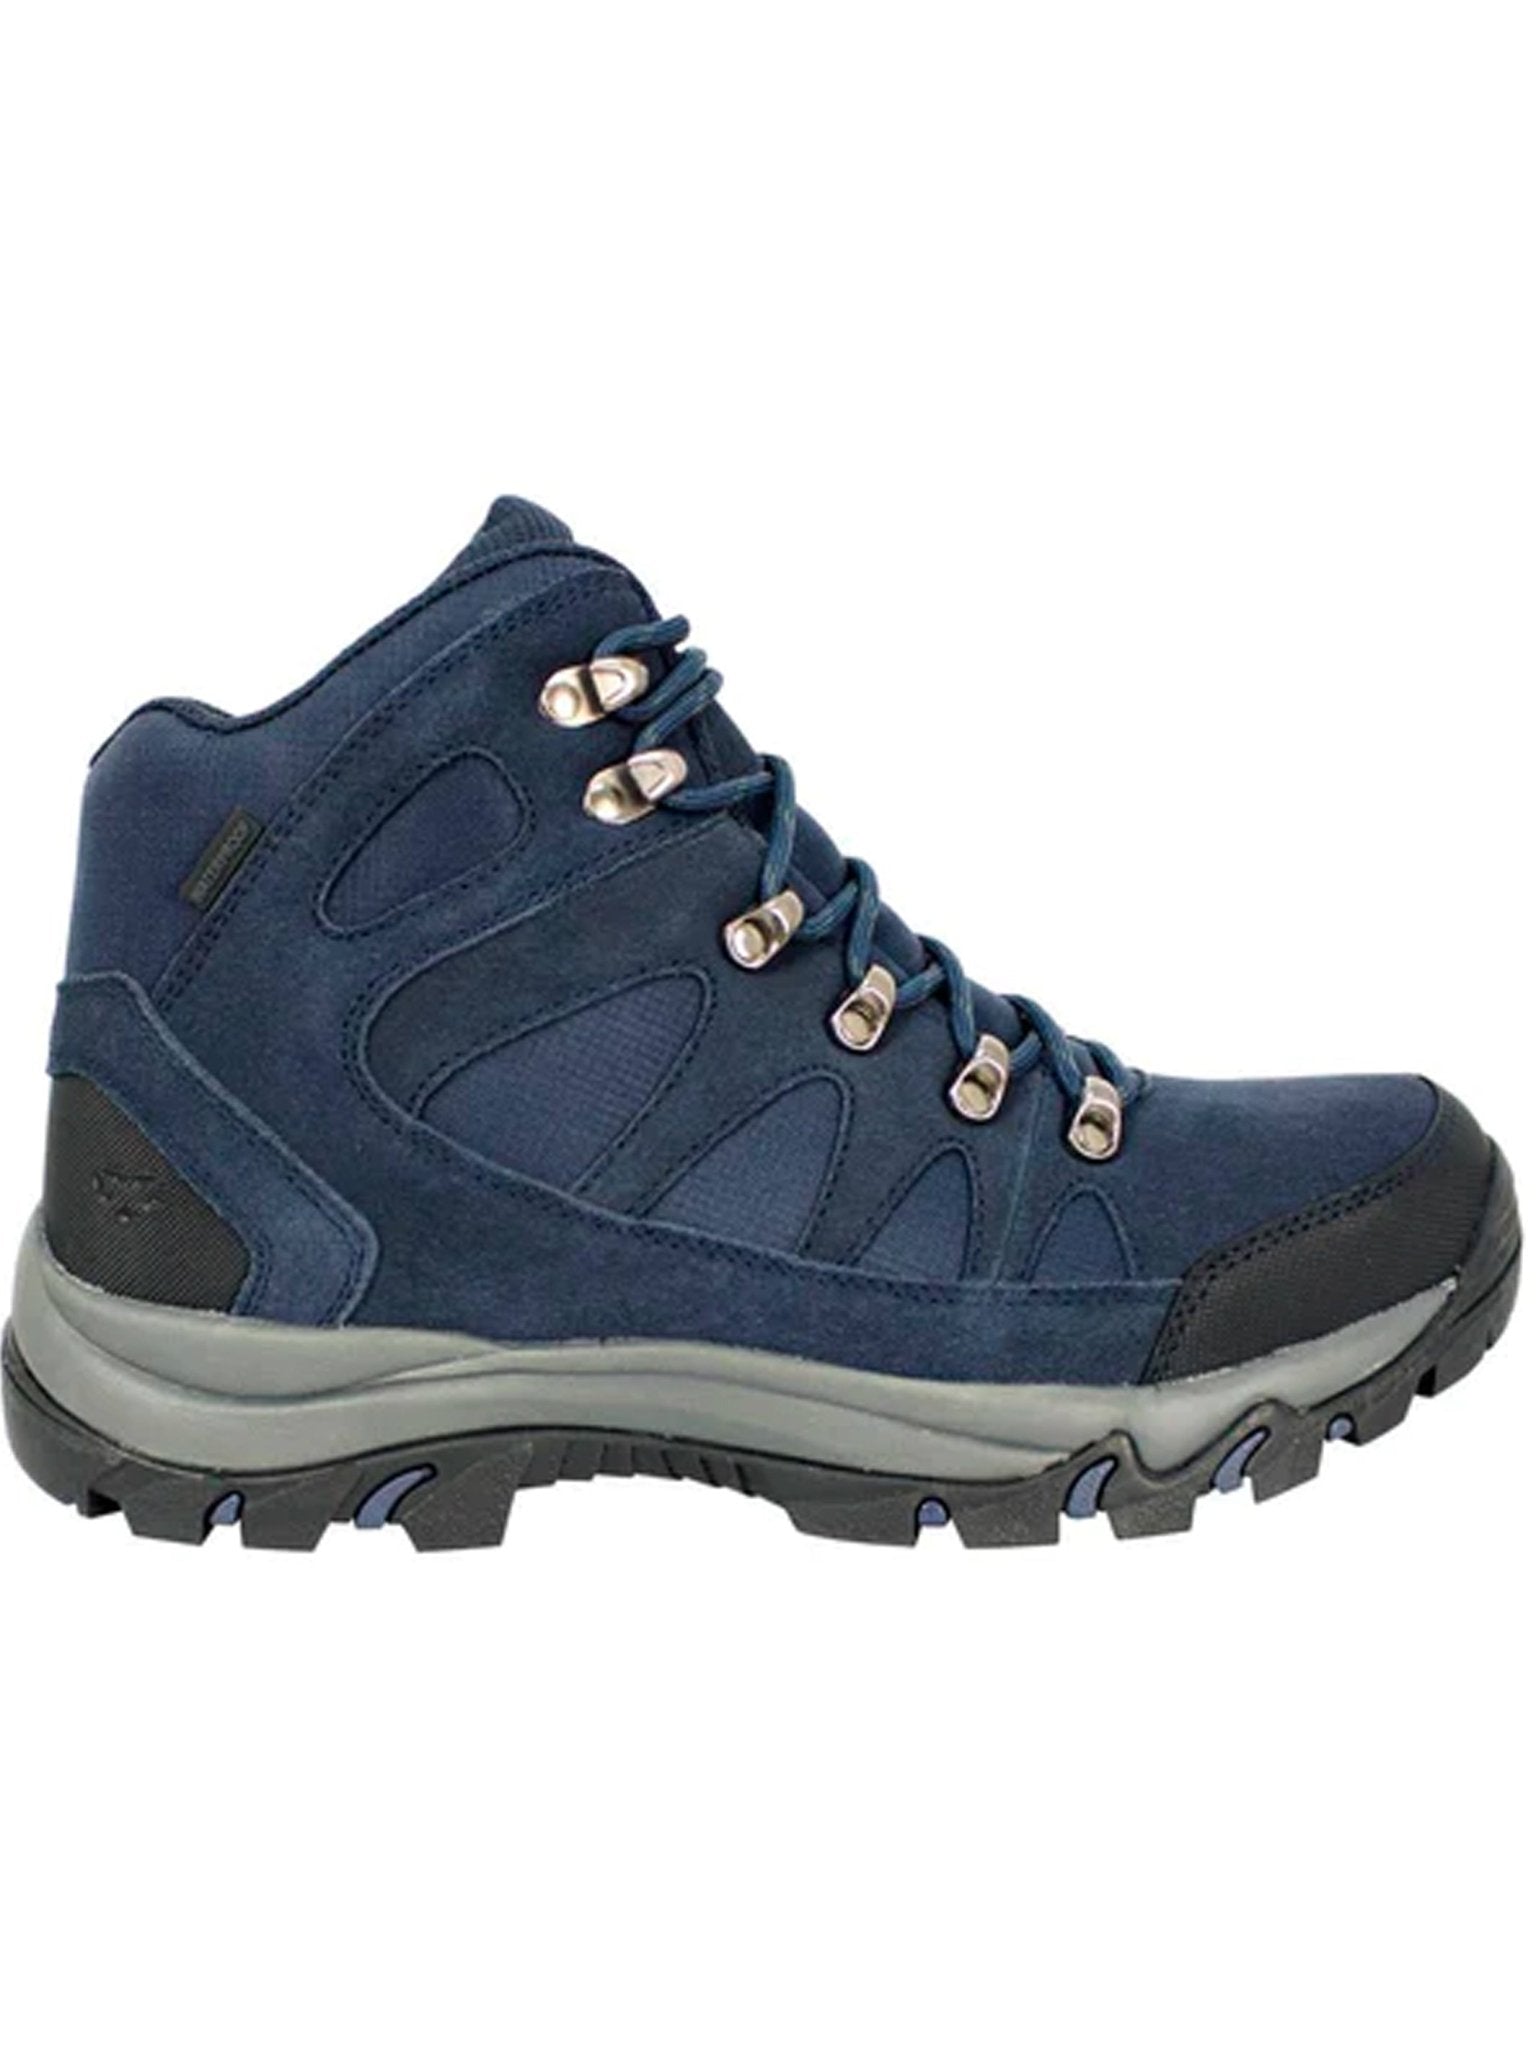 Hoggs of Fife Hoggs Of Fife - Nevis Waterproof Outdoor Hiking / Trail Boot / waterproof walking shoe Boots